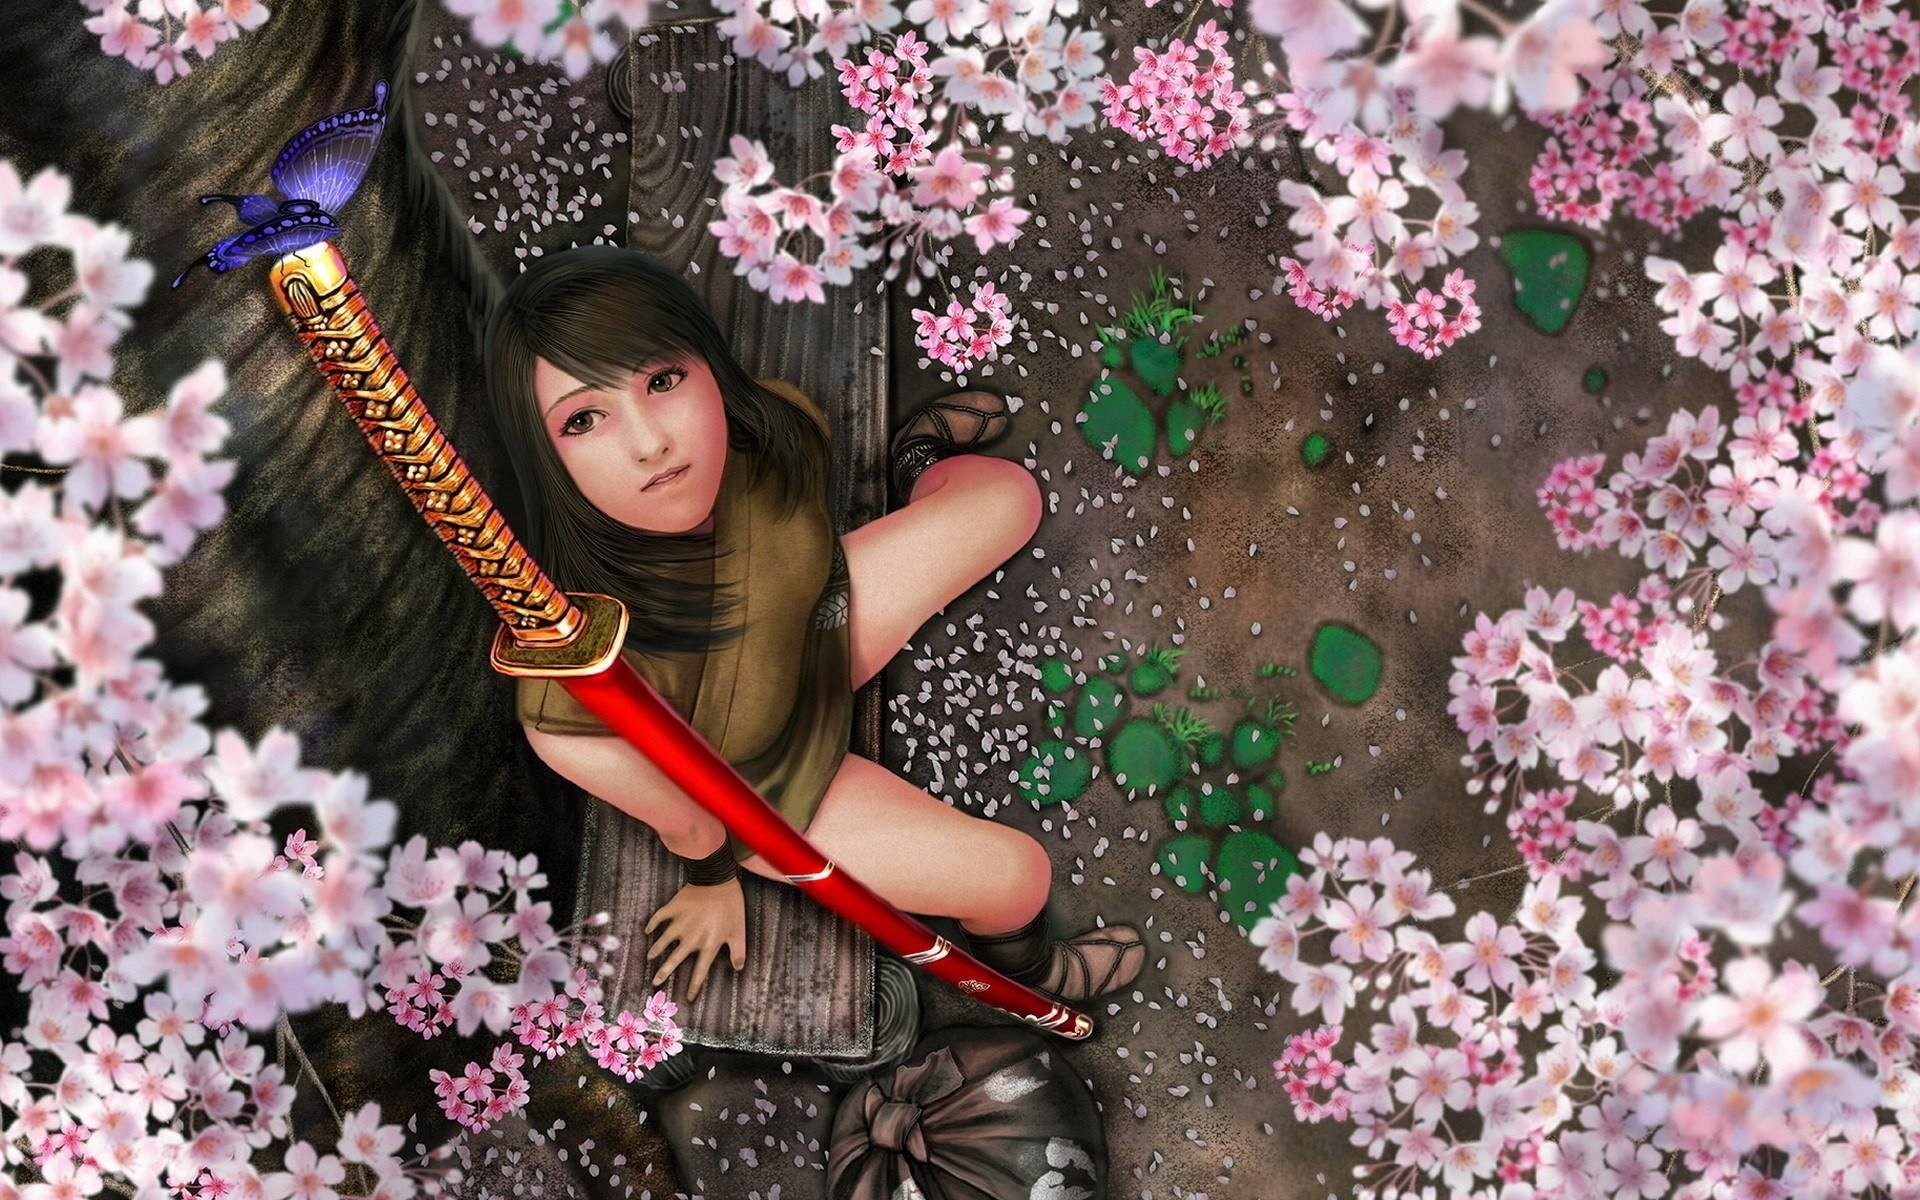 1920x1200 BUTTERFLY - fantasy flowers katana sword samurai girl wallpaper |   | 554497 | WallpaperUP